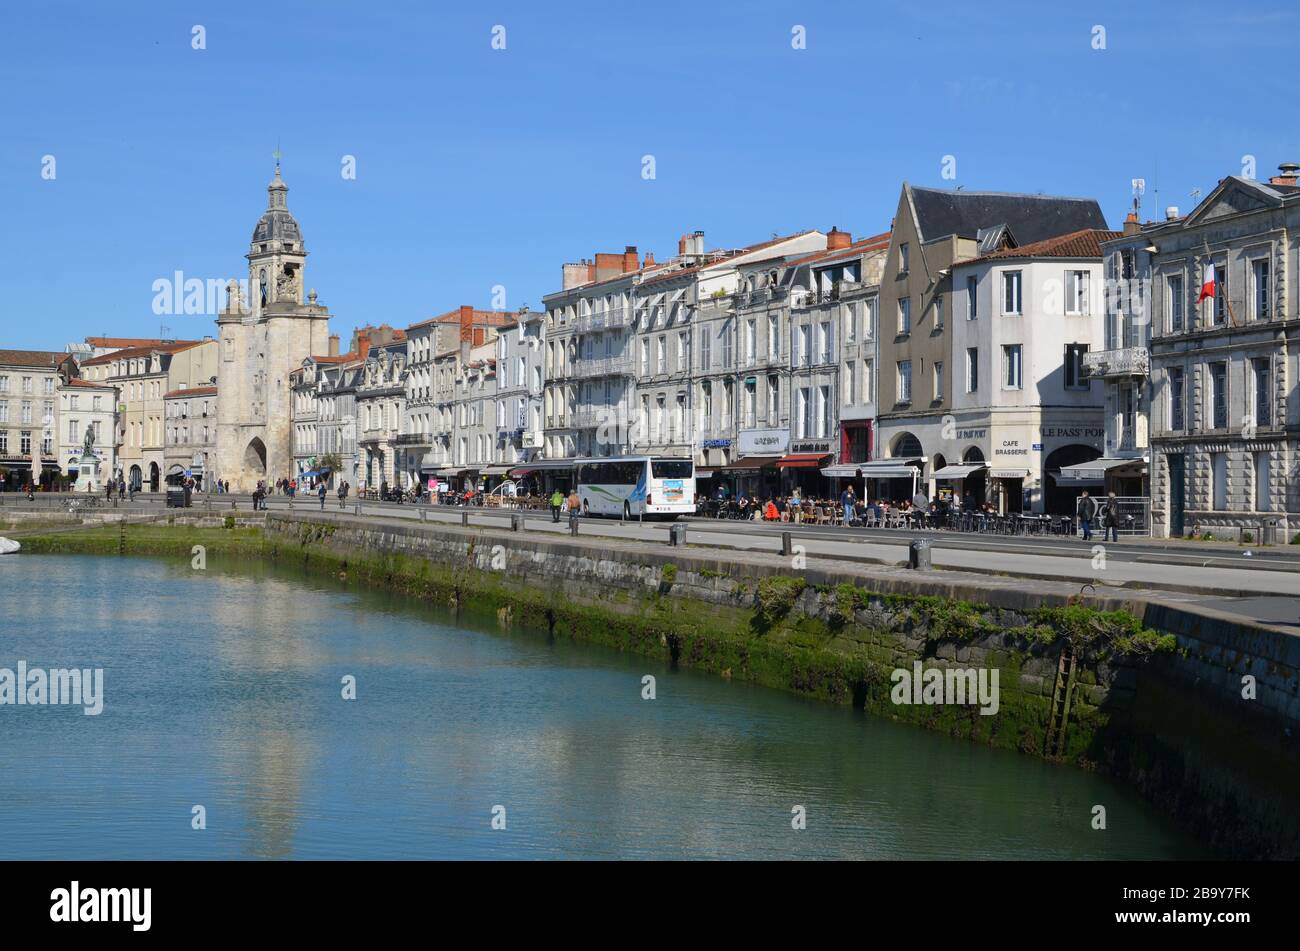 Vieux port de la Rochelle, France, 2016. Banque D'Images